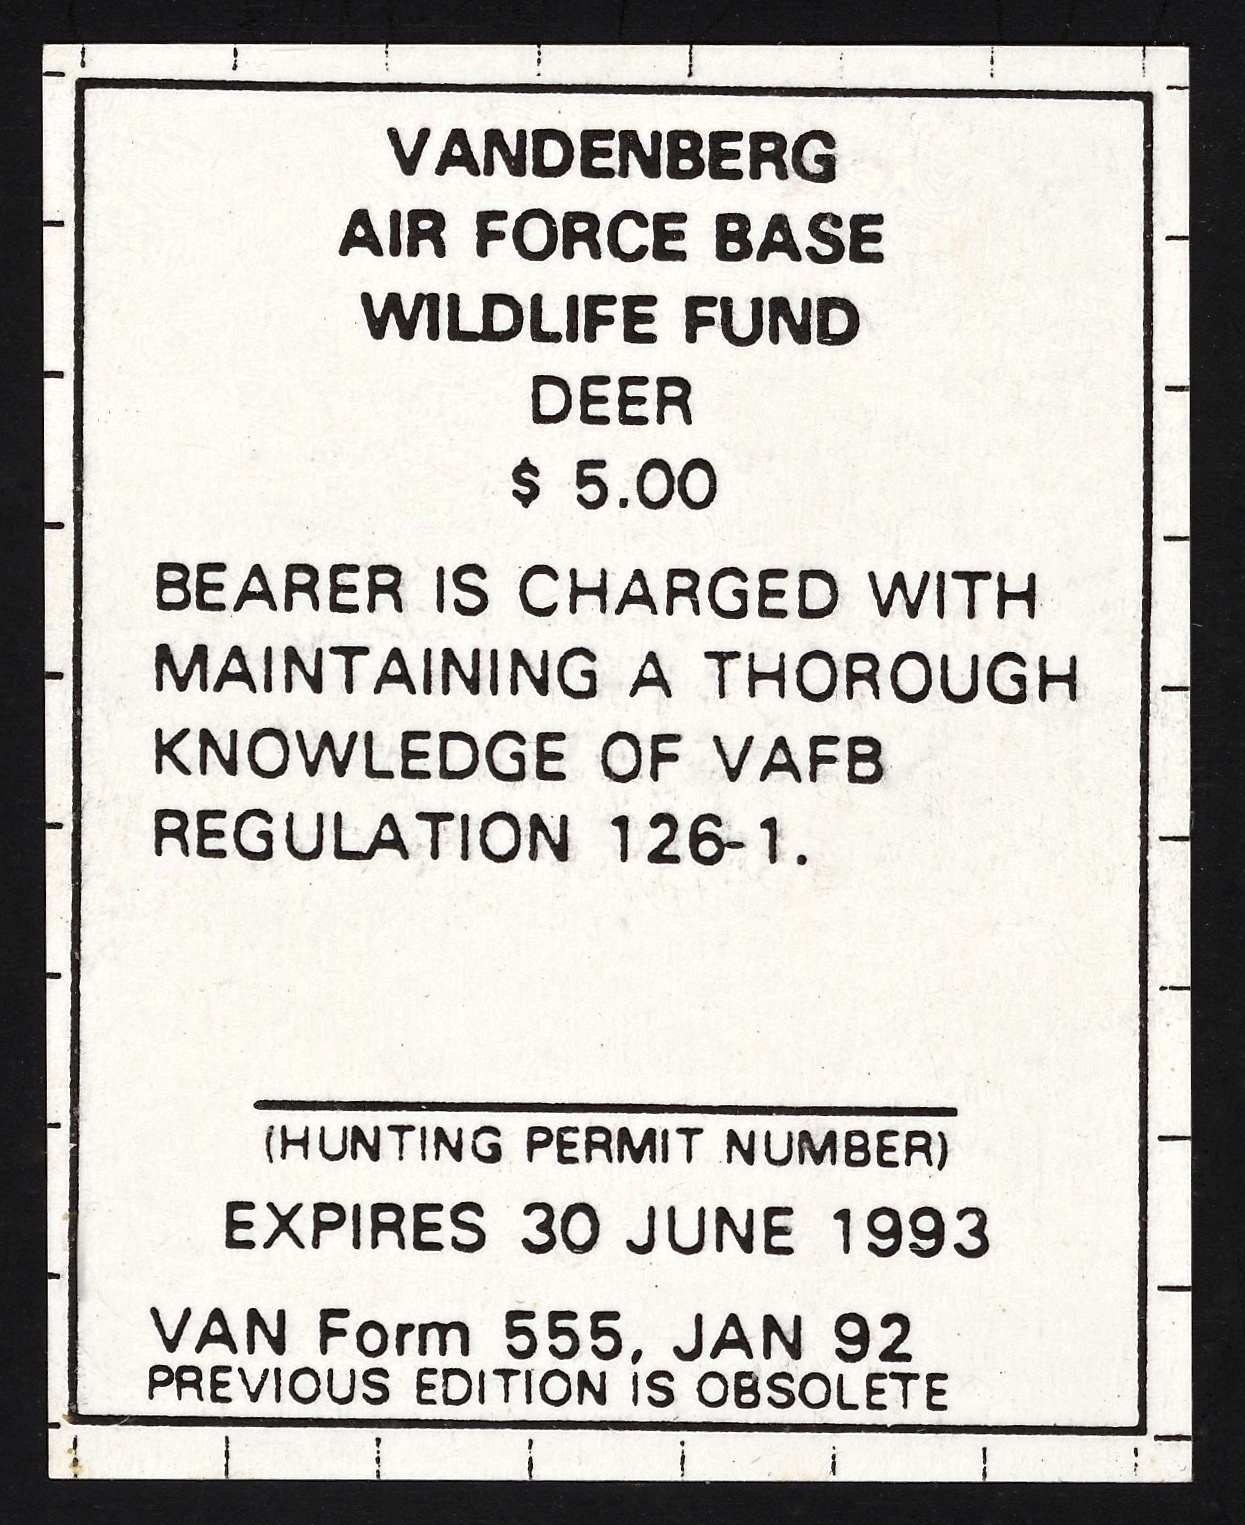 1992-93 VAFB Deer